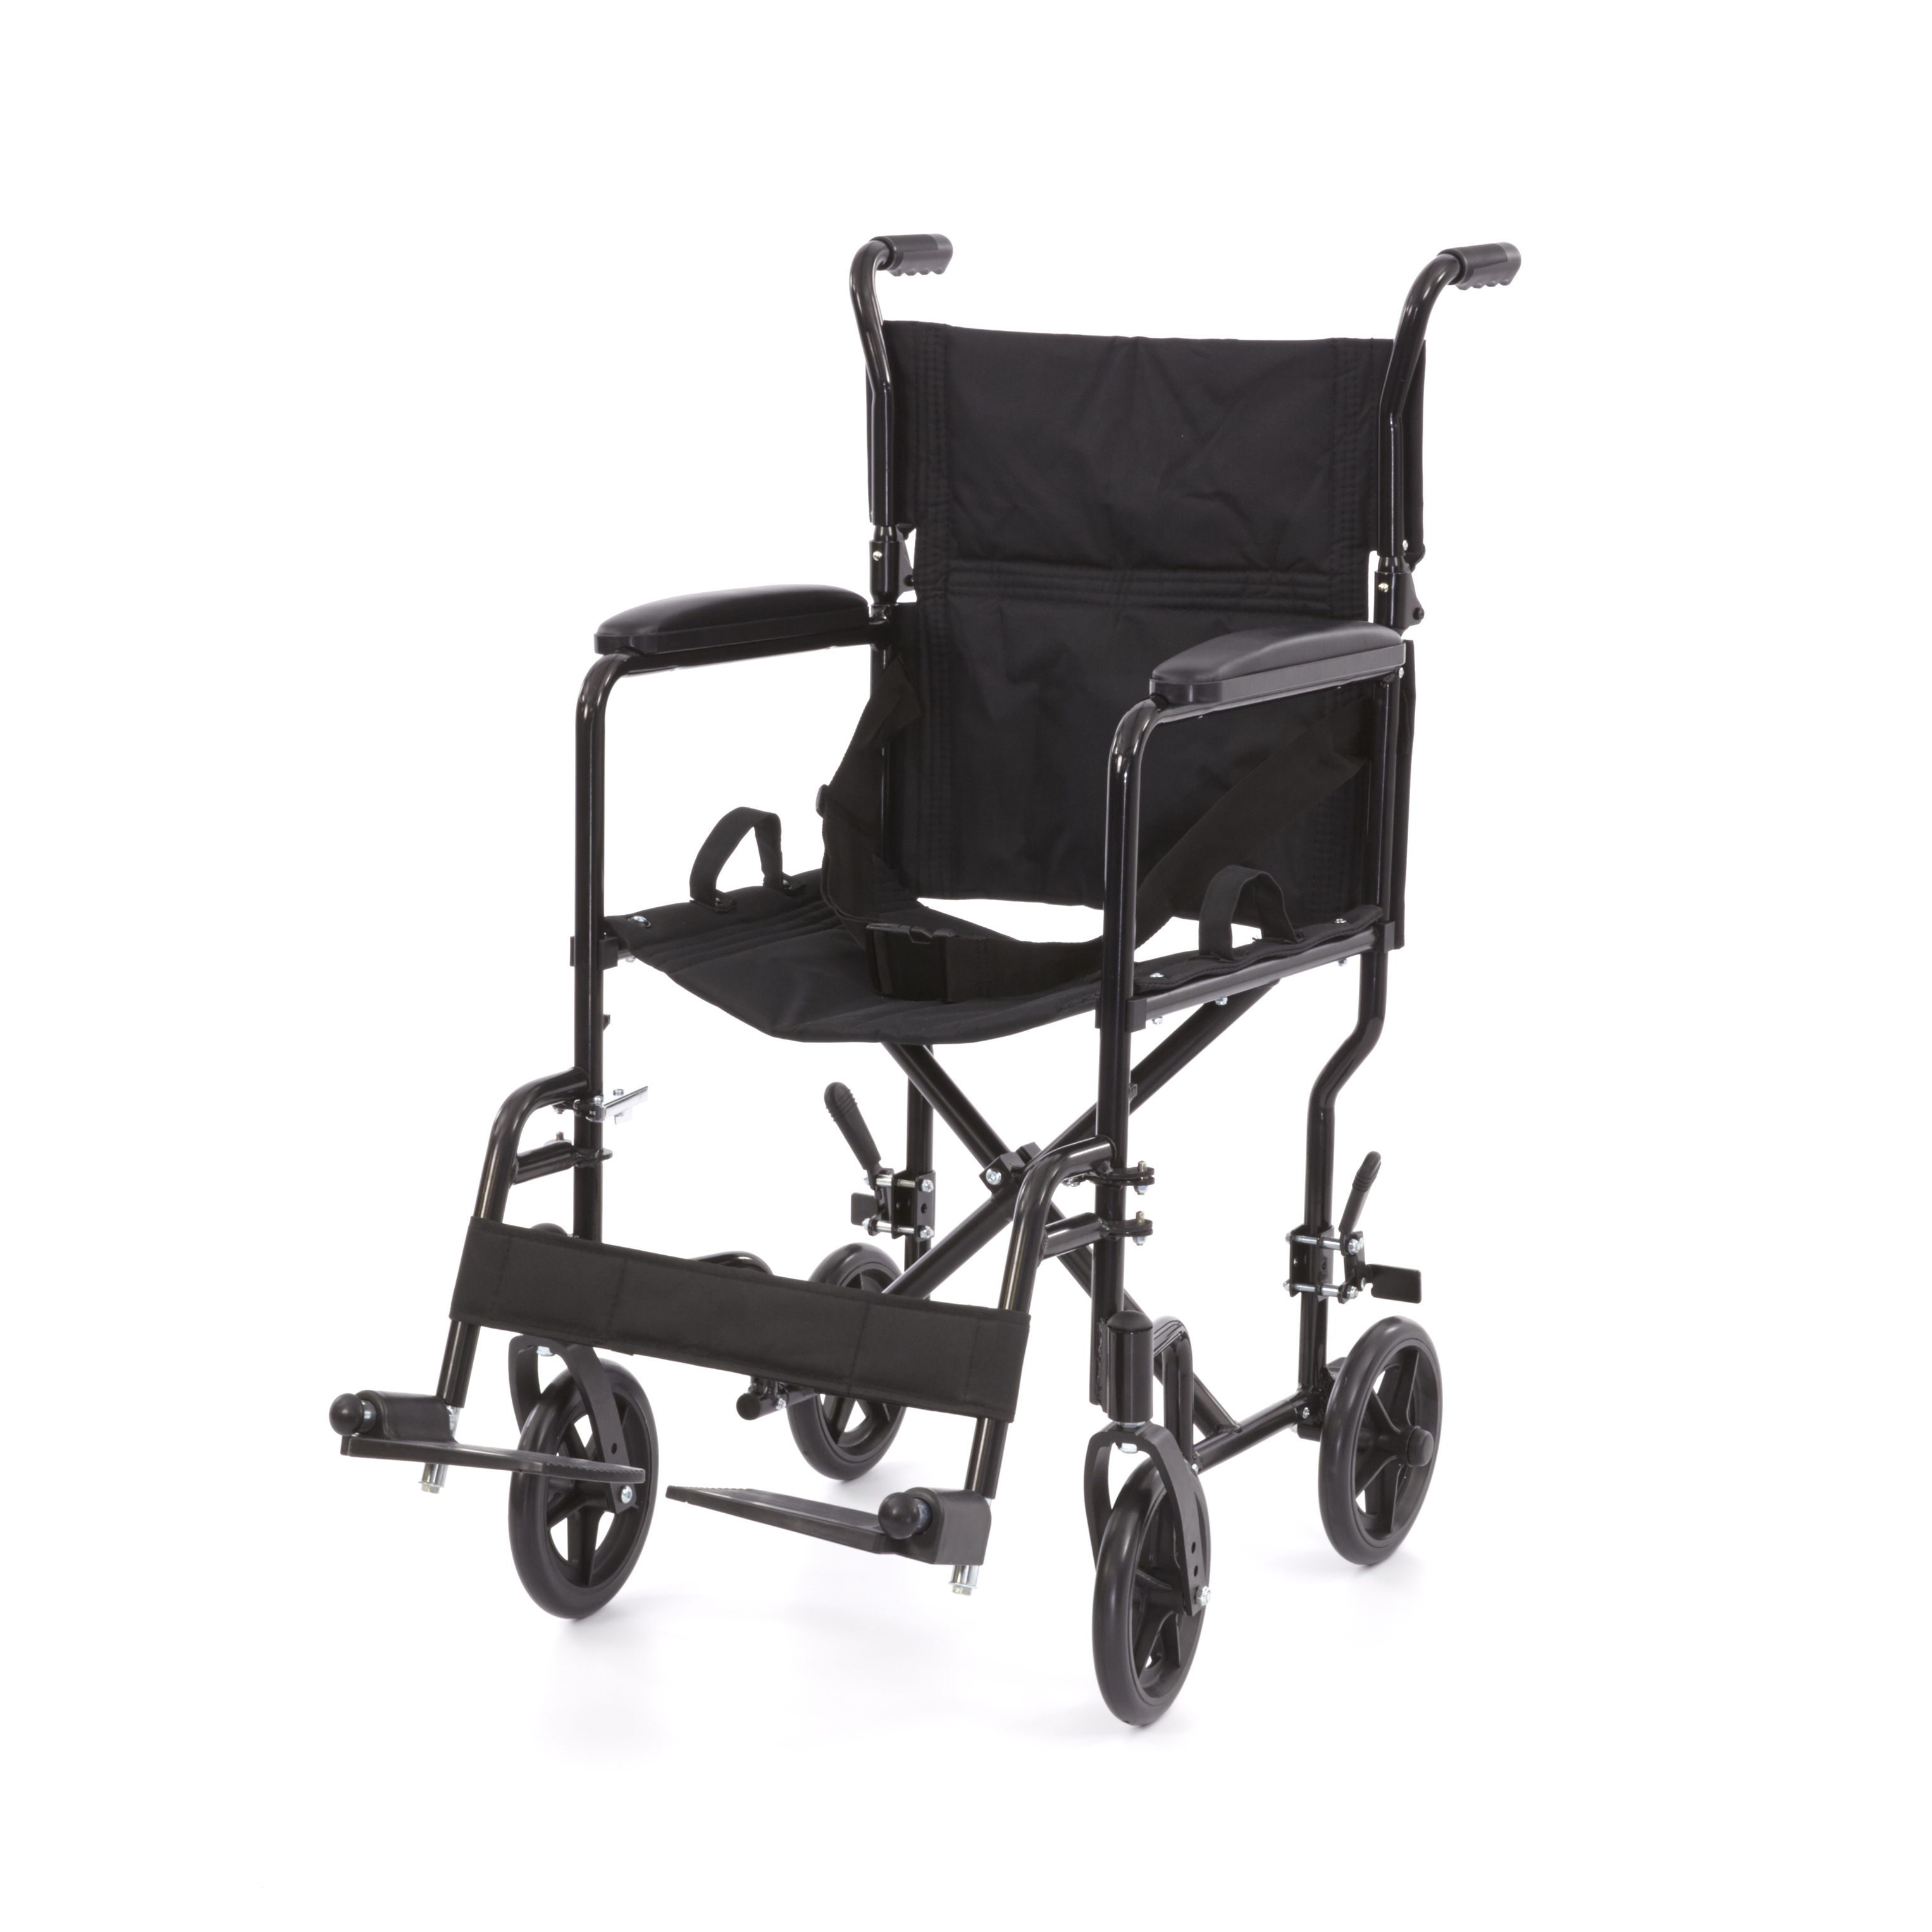 WHE-02-BLACK Romed inklapbare aluminium transport rolstoel met inklapbare rugsteun, vaste armsteunen en uitklapbare voetsteunen.